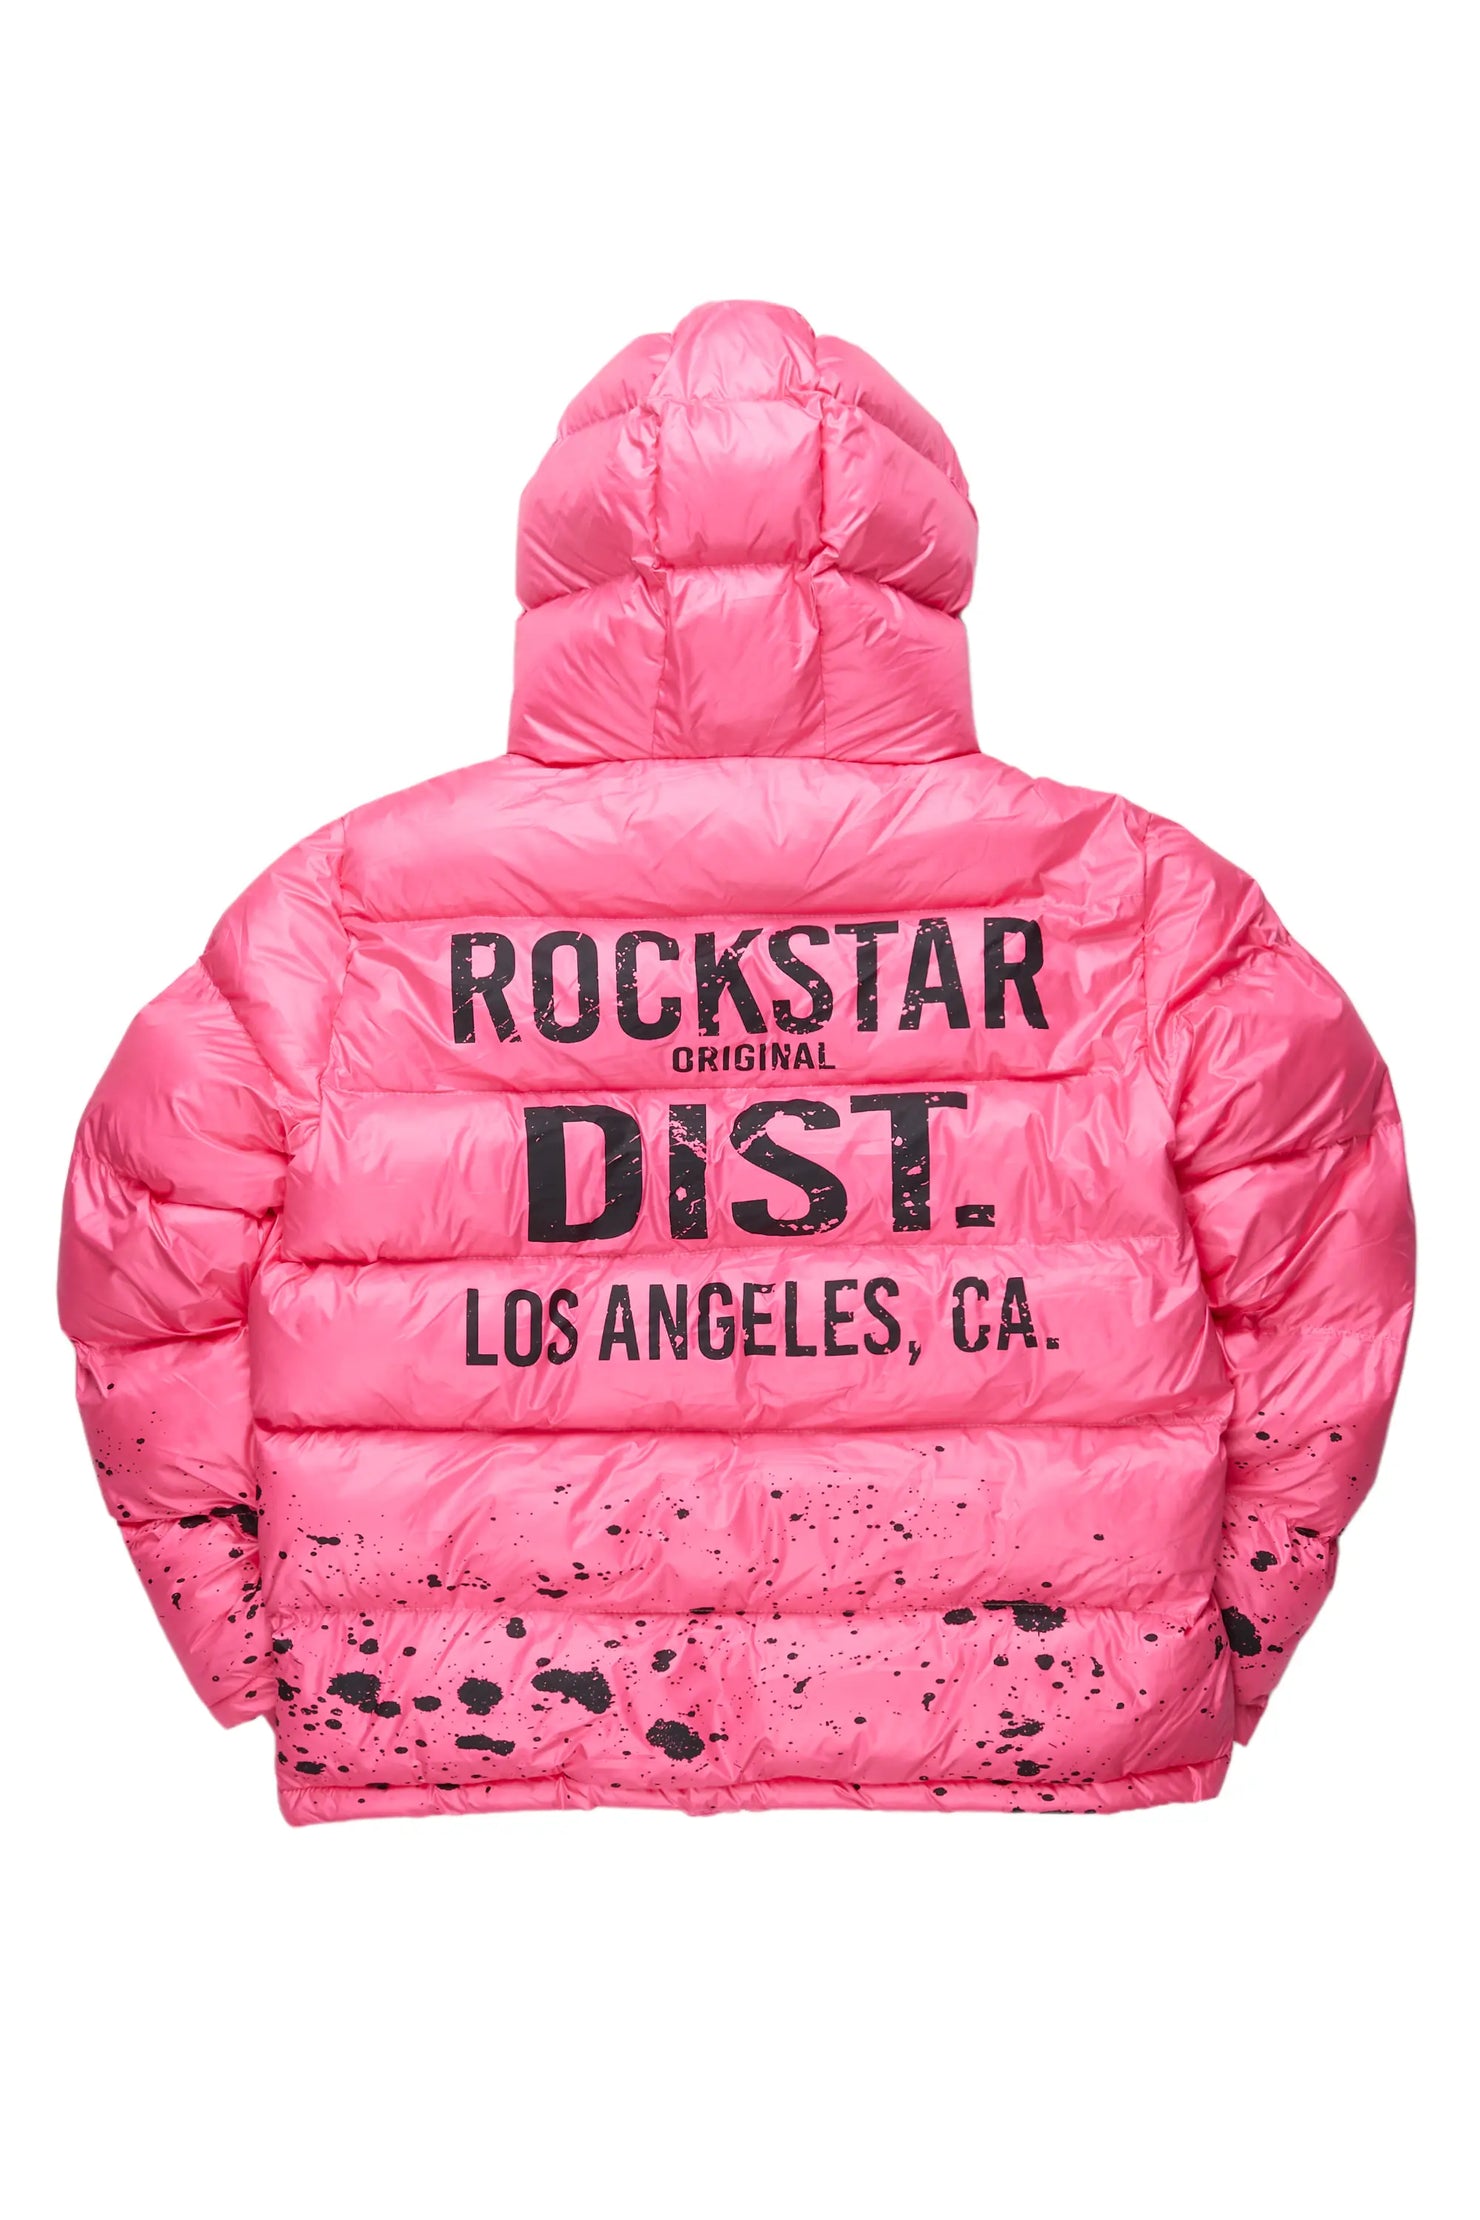 Art Dist. Pink Puffer Jacket